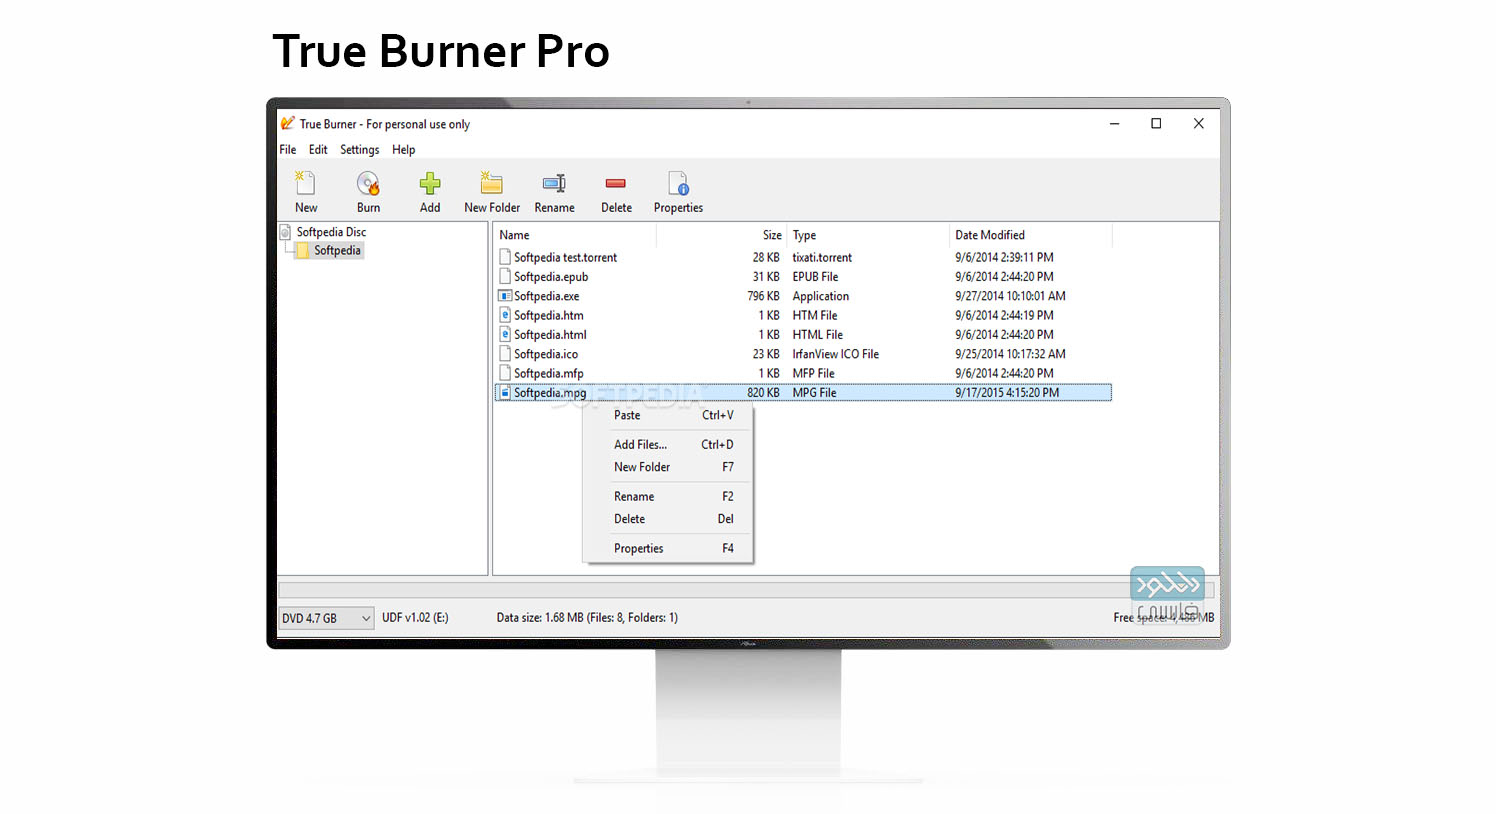 True Burner Pro 9.5 download the last version for apple